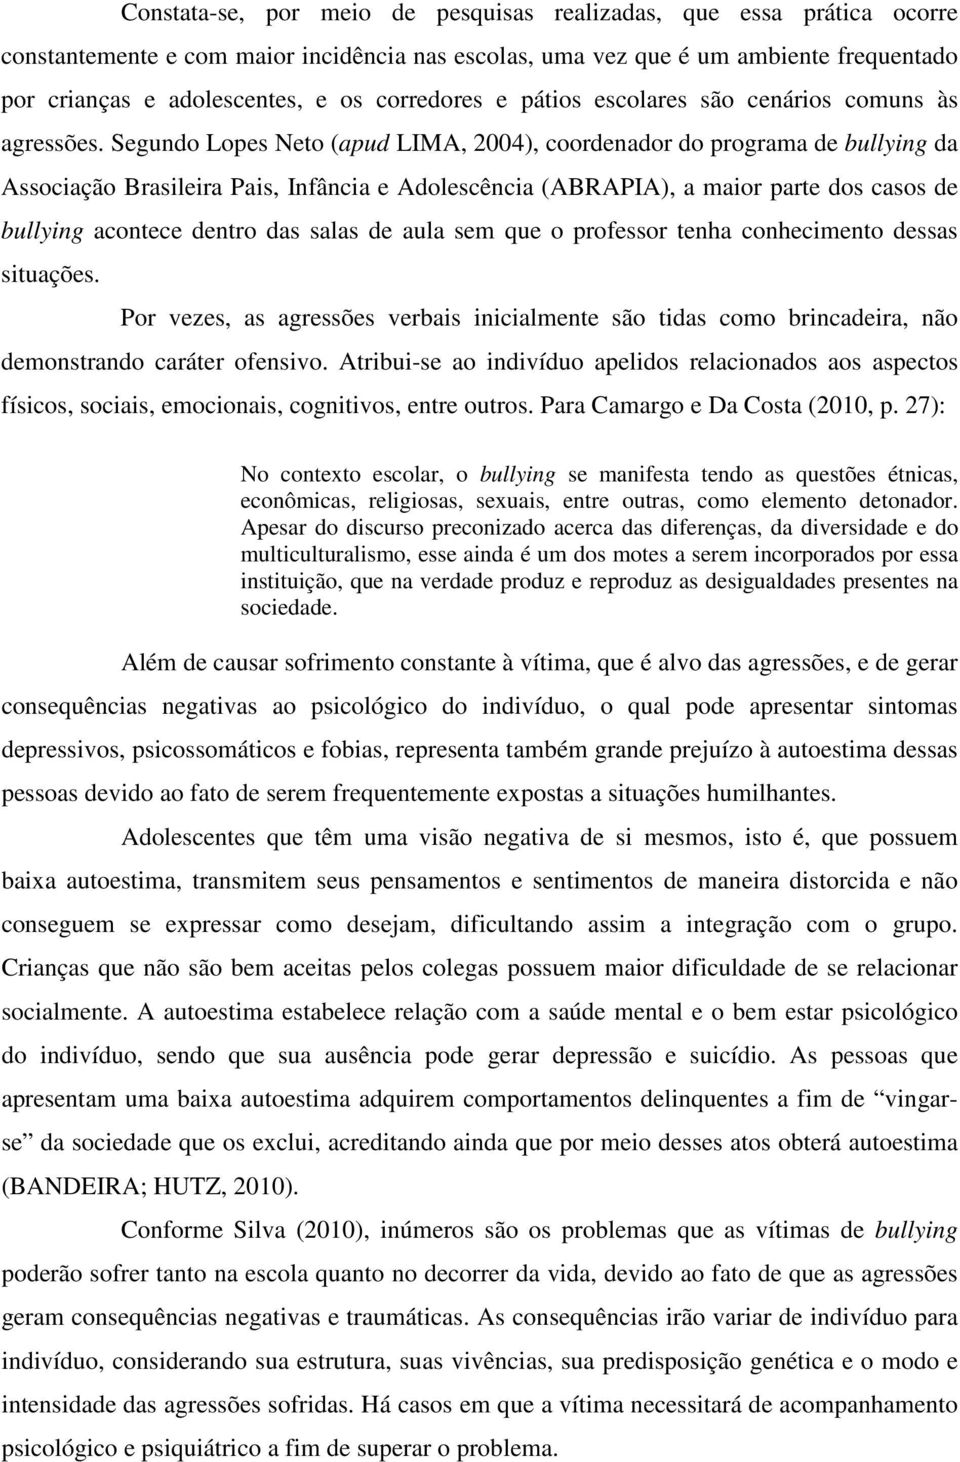 Segundo Lopes Neto (apud LIMA, 2004), coordenador do programa de bullying da Associação Brasileira Pais, Infância e Adolescência (ABRAPIA), a maior parte dos casos de bullying acontece dentro das